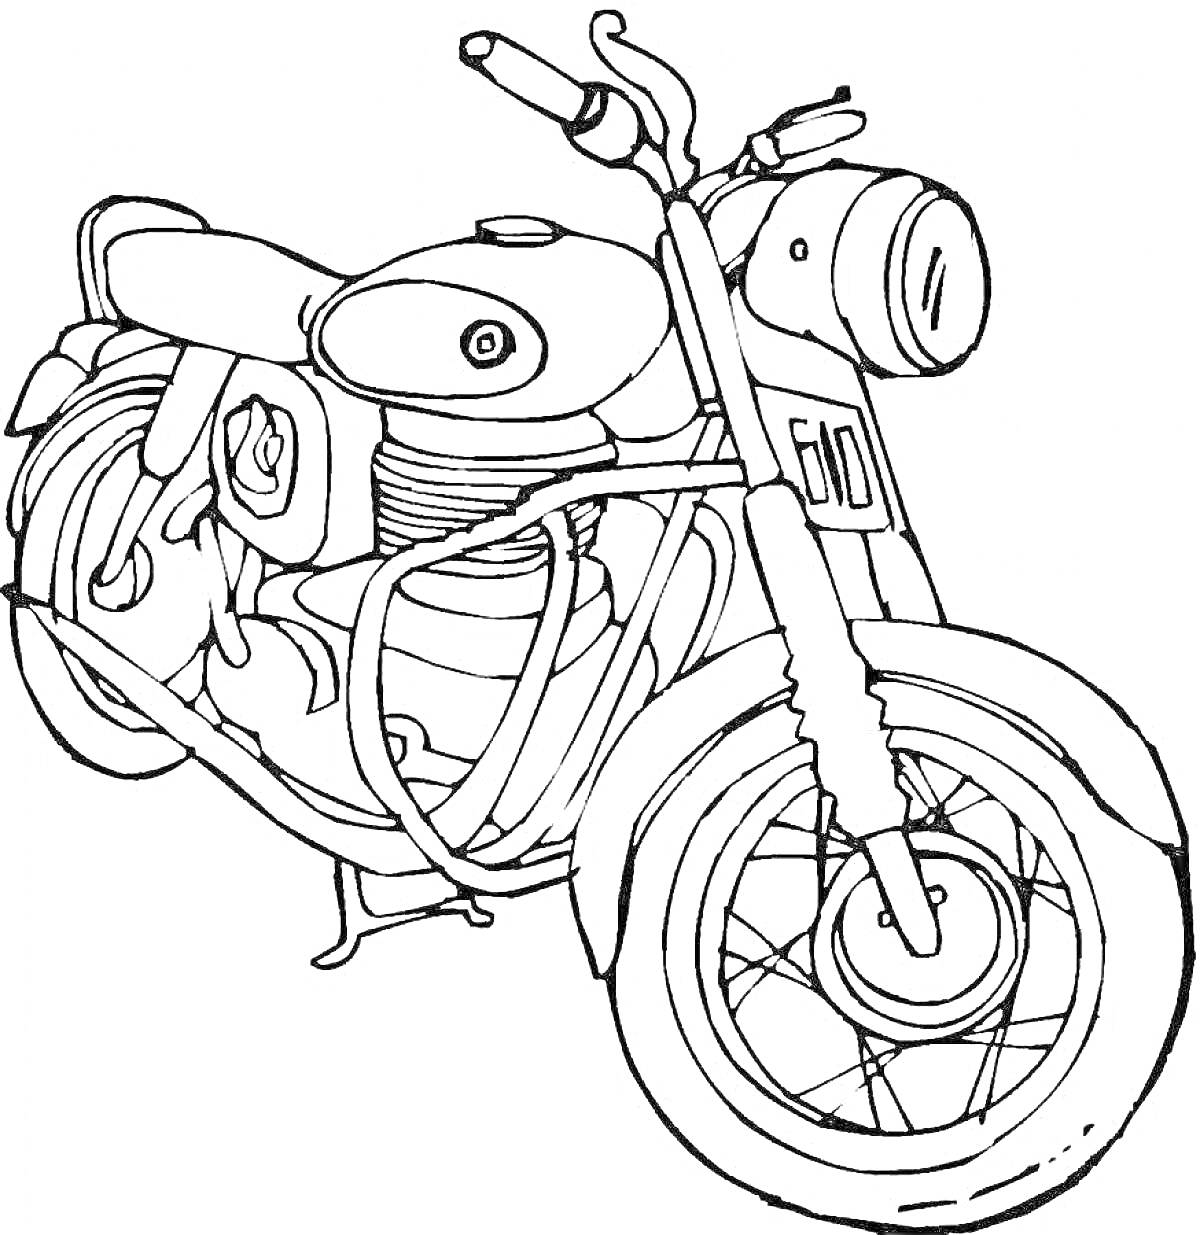 Раскраска Классический мотоцикл с литым передним ободом, фарами и сиденьем